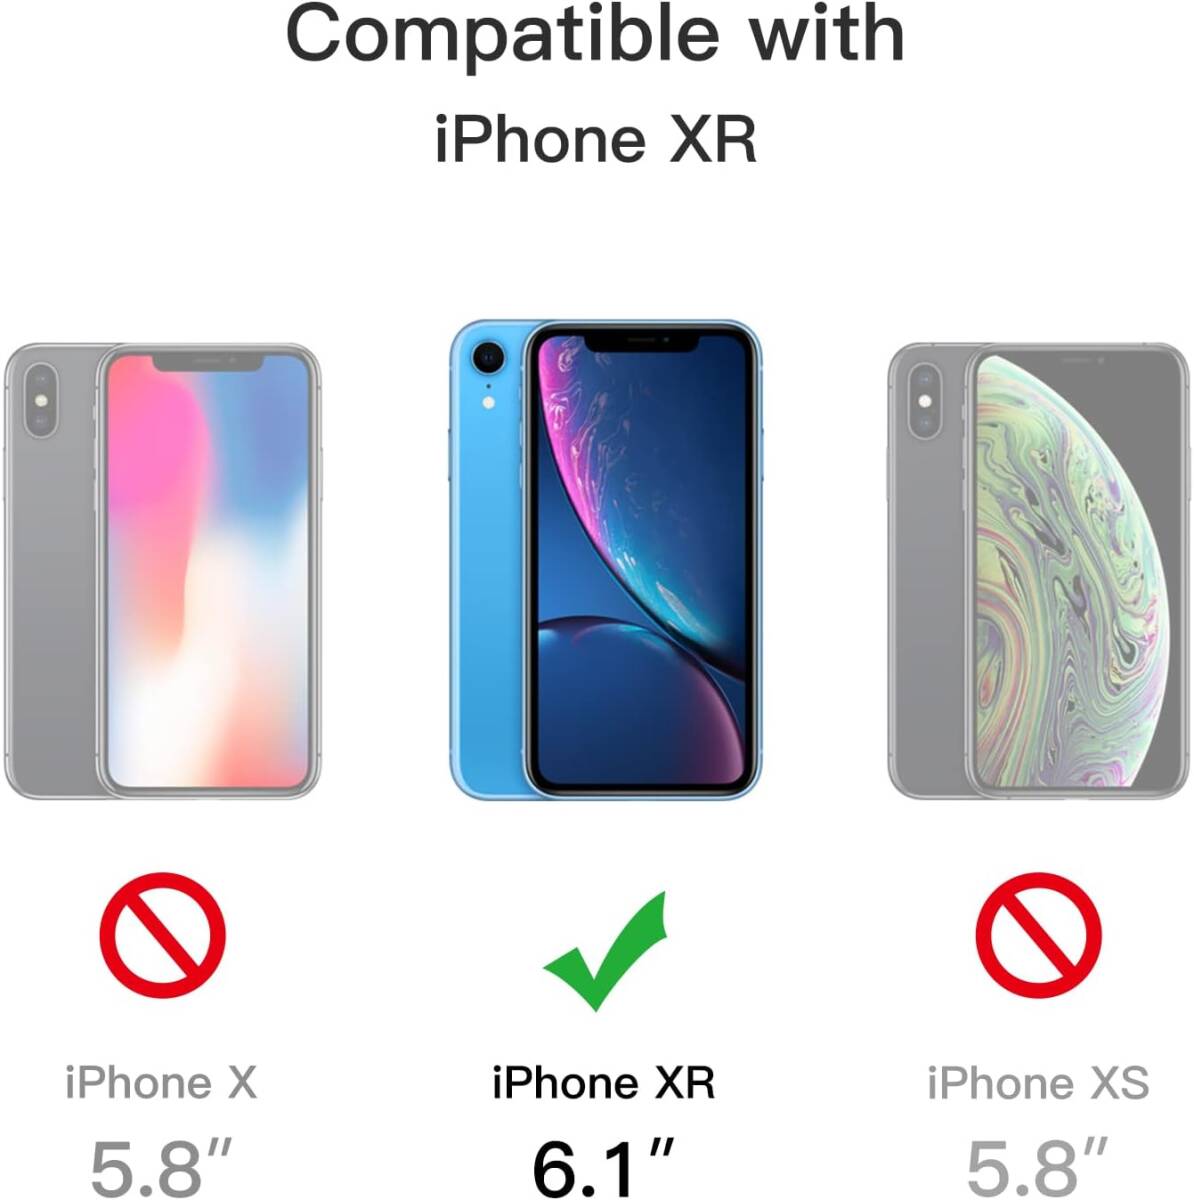 JEDirect マットケース iPhone XR 6.1インチ 耐衝撃性ミリタリーグレードの落下防止 つや消しの半透明の背面電話カバー 指紋防止 (空色)